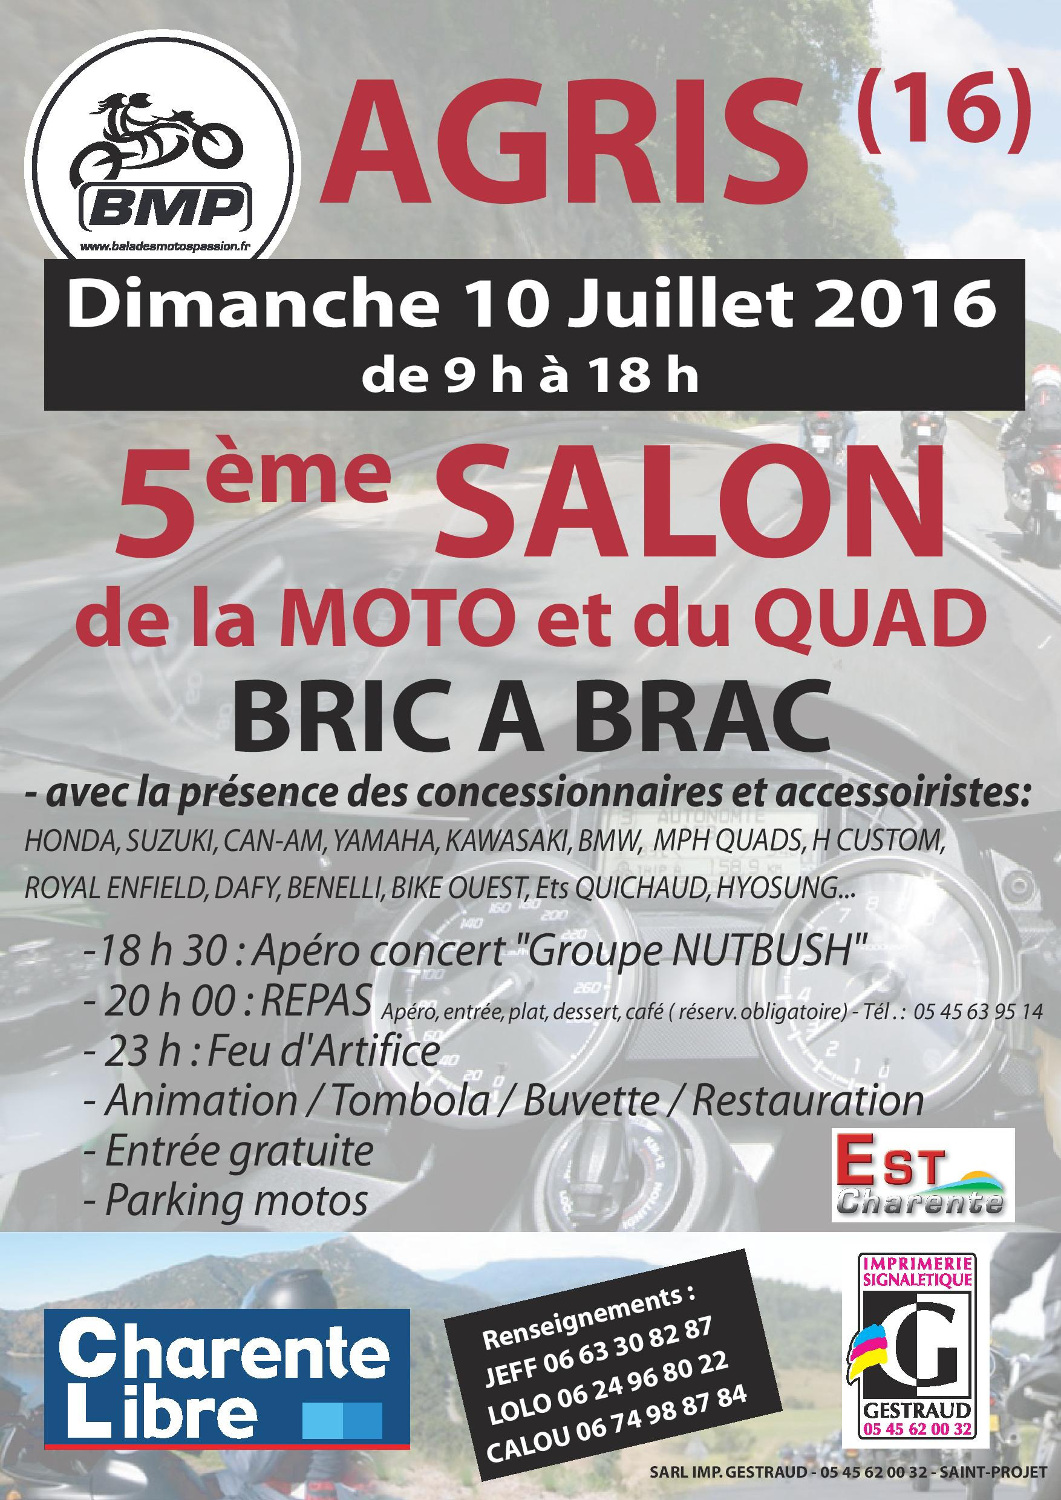 Salon de la moto, du quad et du bric à brac à Agris (...)